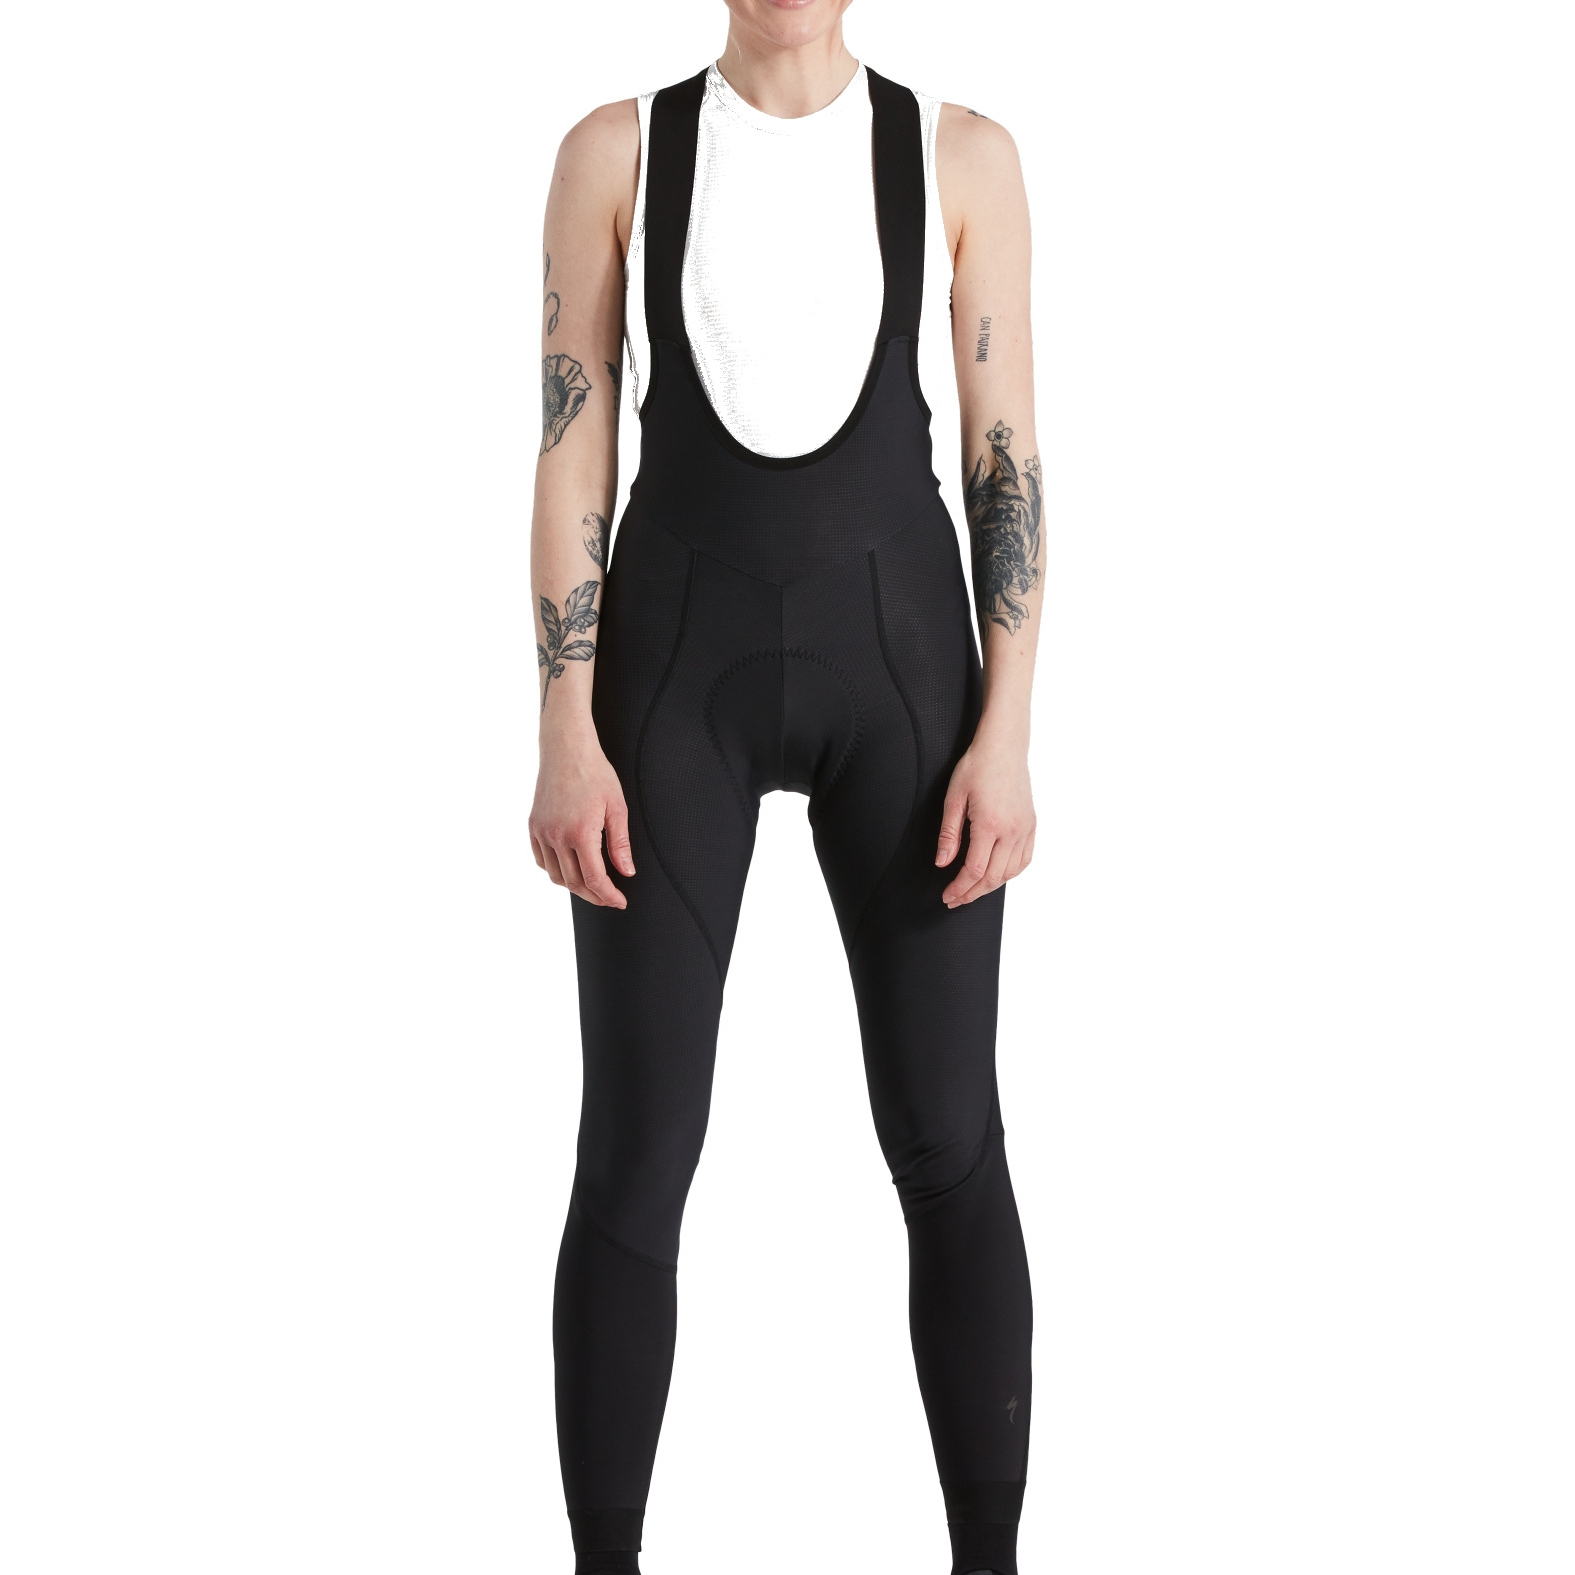 Produktbild von Specialized SL Pro Thermal Trägerhose Damen - schwarz